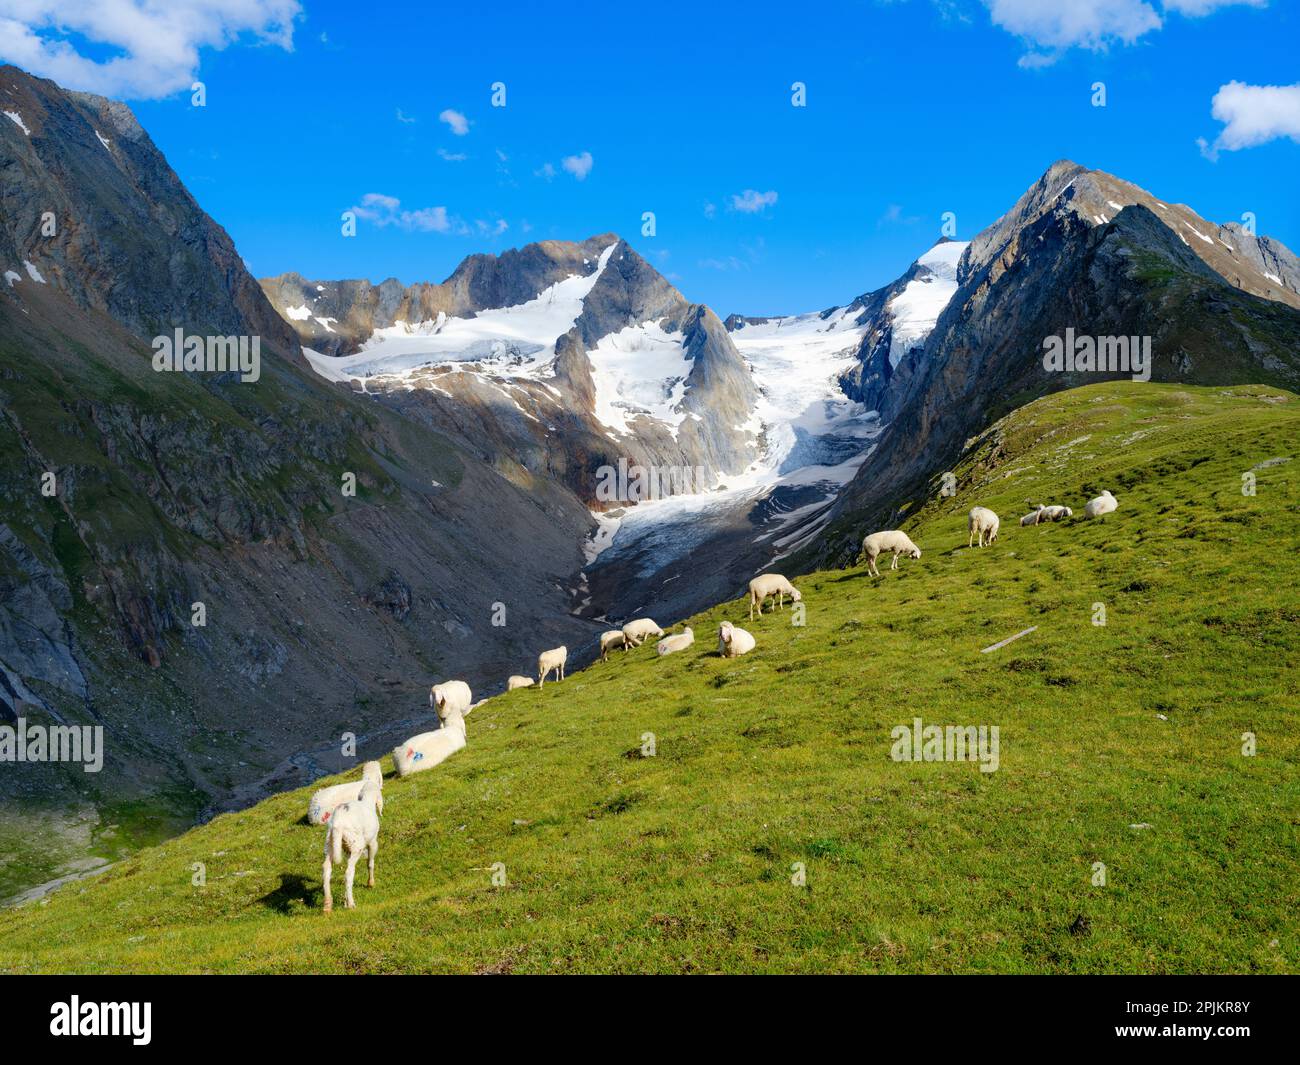 Tiroler Bergschaf (mouflon tyrolien également appelé Pecora Alina Tirolese) sur son alpage de montagne (Shieling) dans les Alpes Otztal. Autriche, Tyrol Banque D'Images